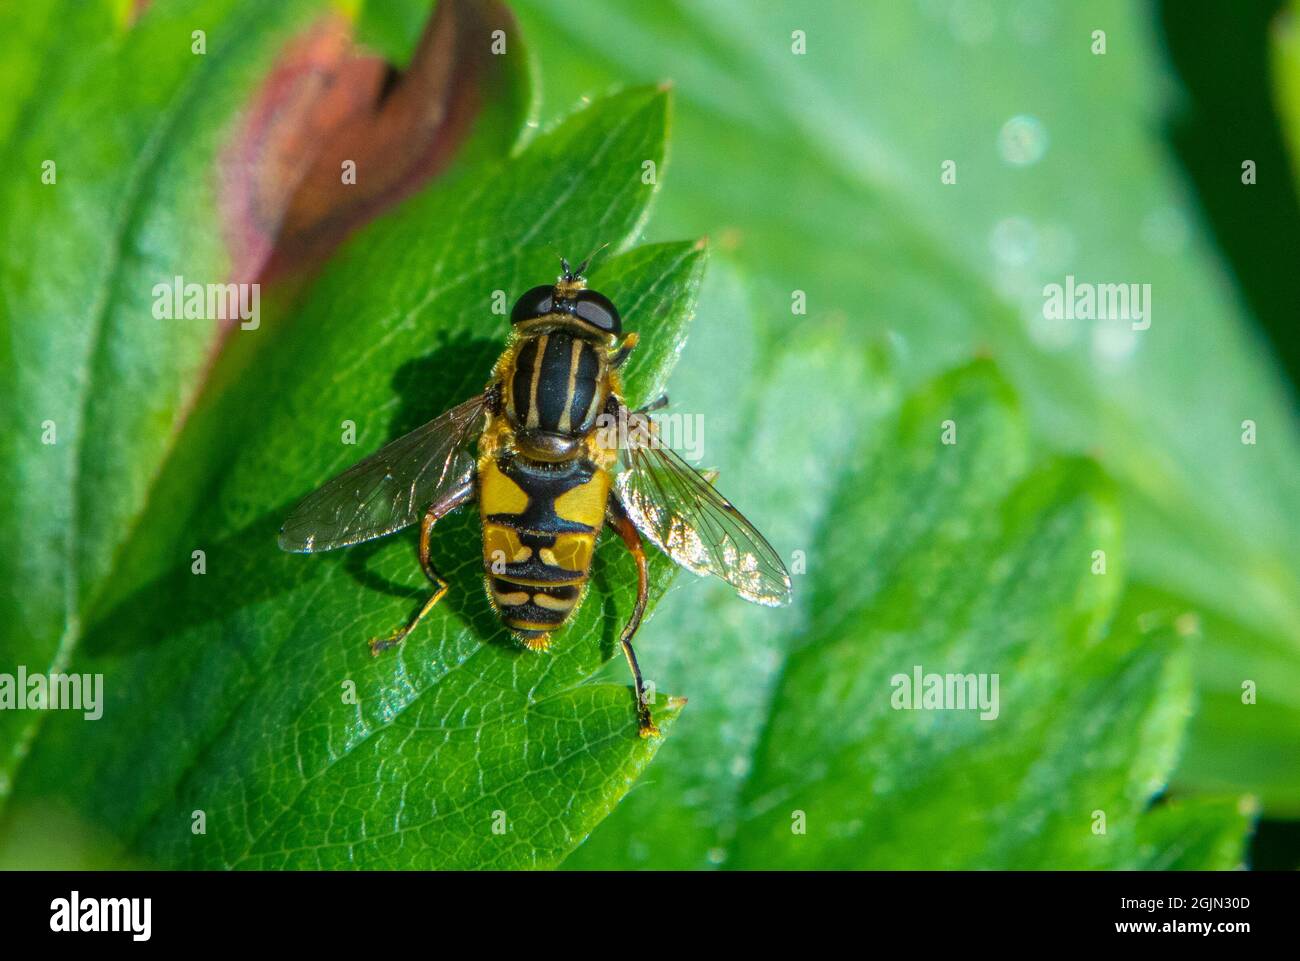 Helophilus pendulus hoverfly on leaf Stock Photo